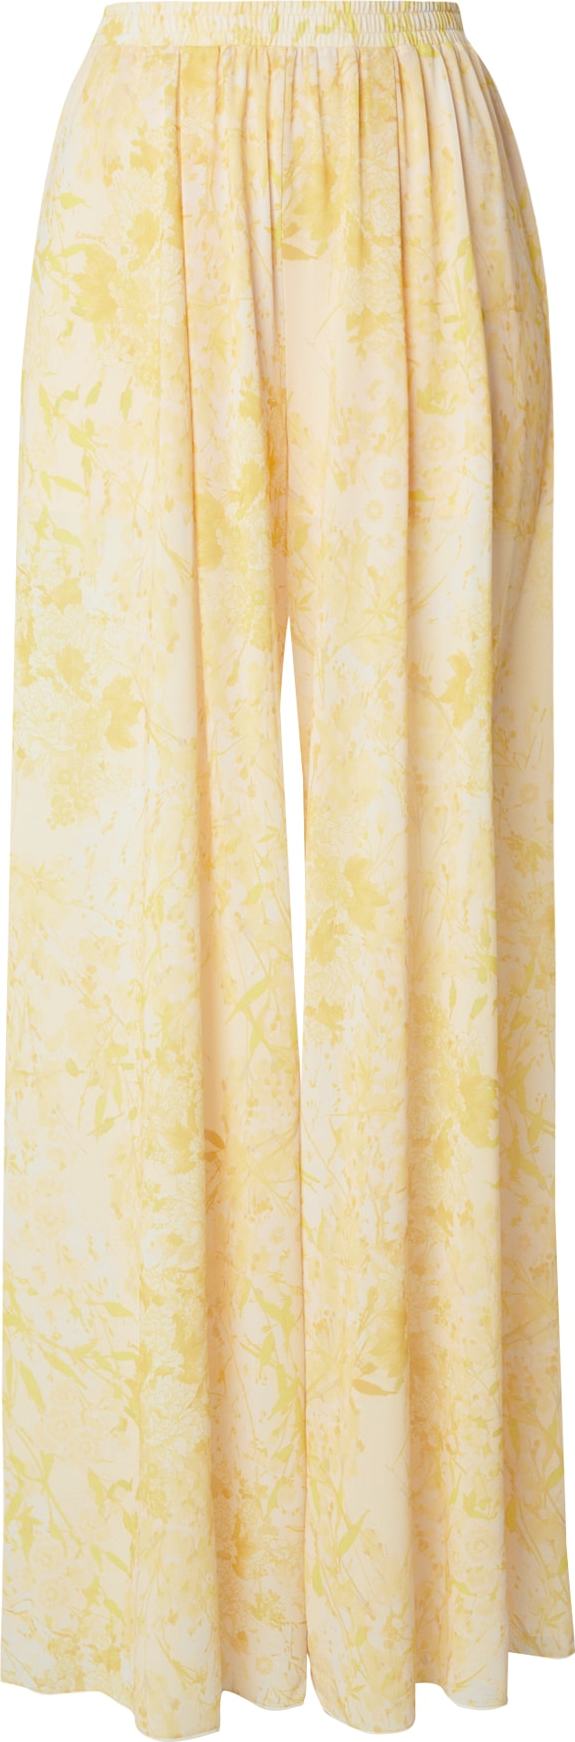 Kalhoty PATRIZIA PEPE žlutá / pastelově žlutá